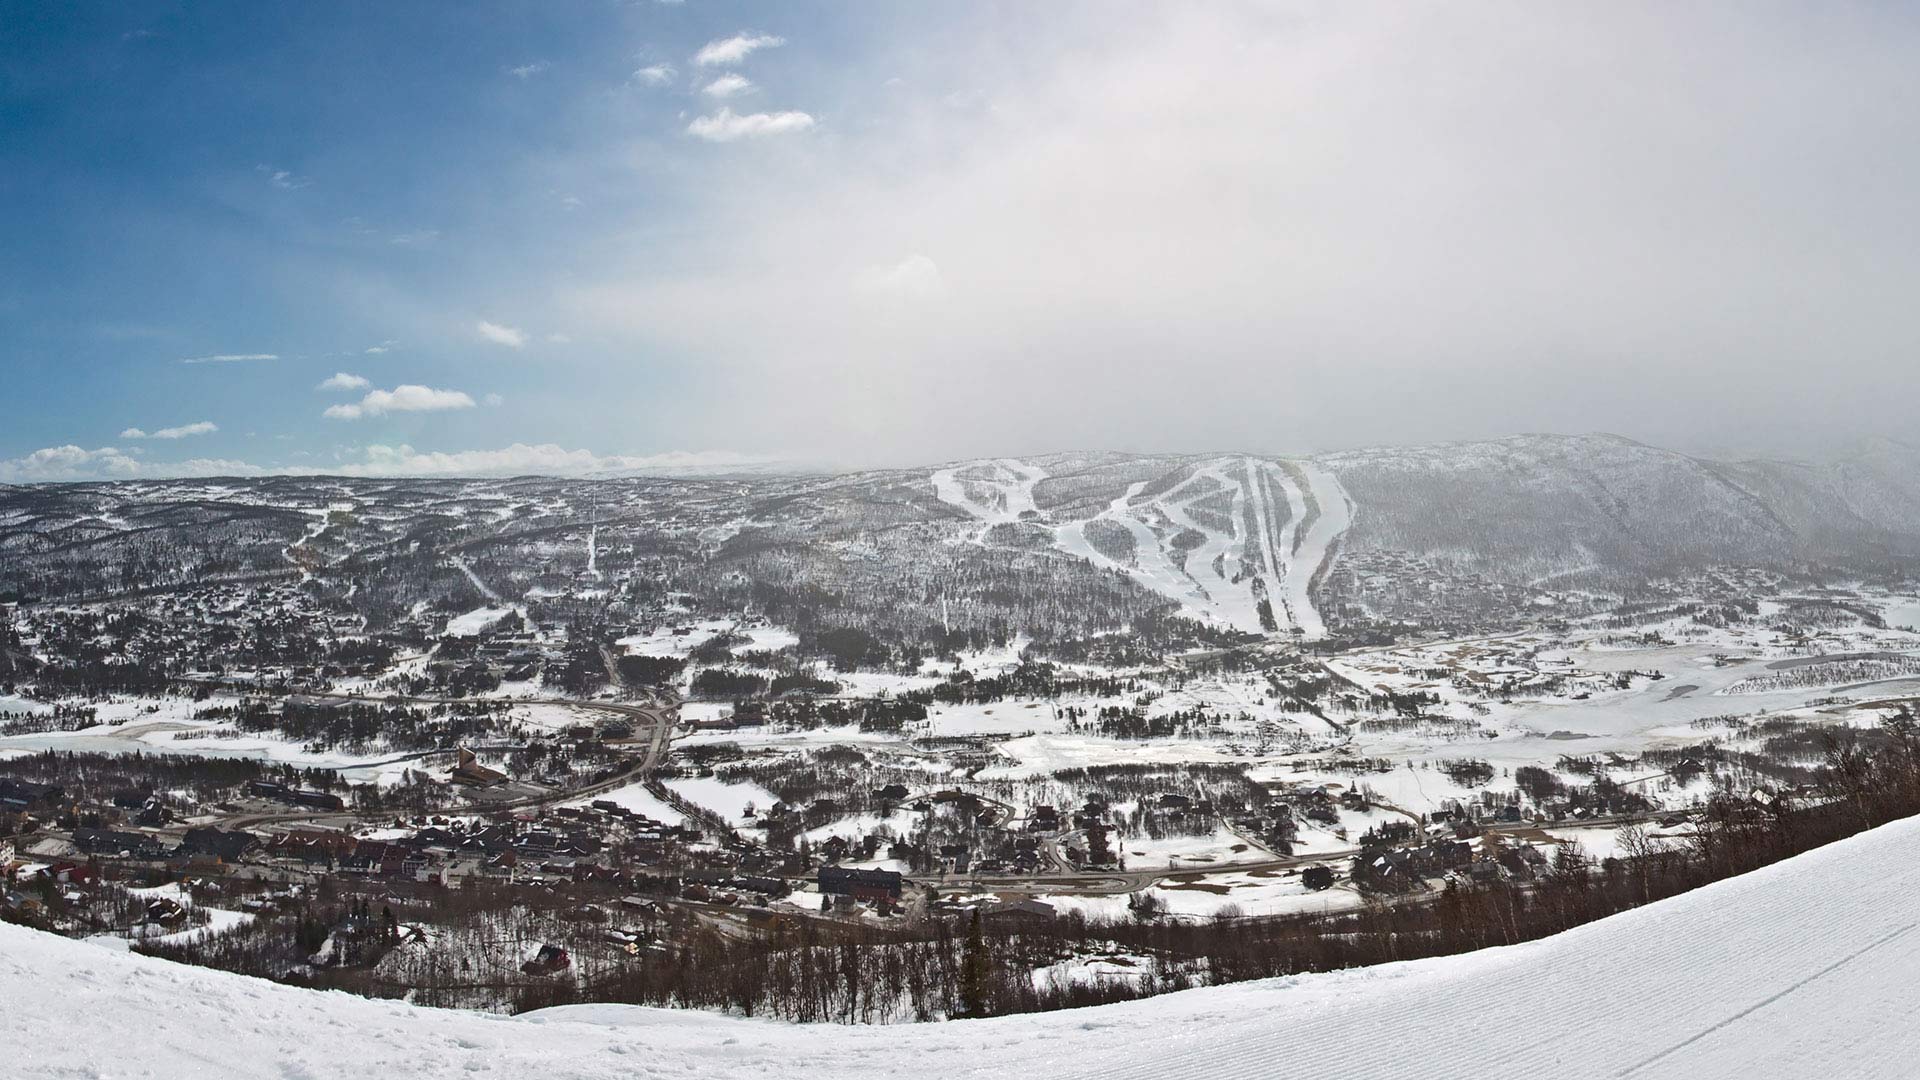 geilo ski slopes norway winter